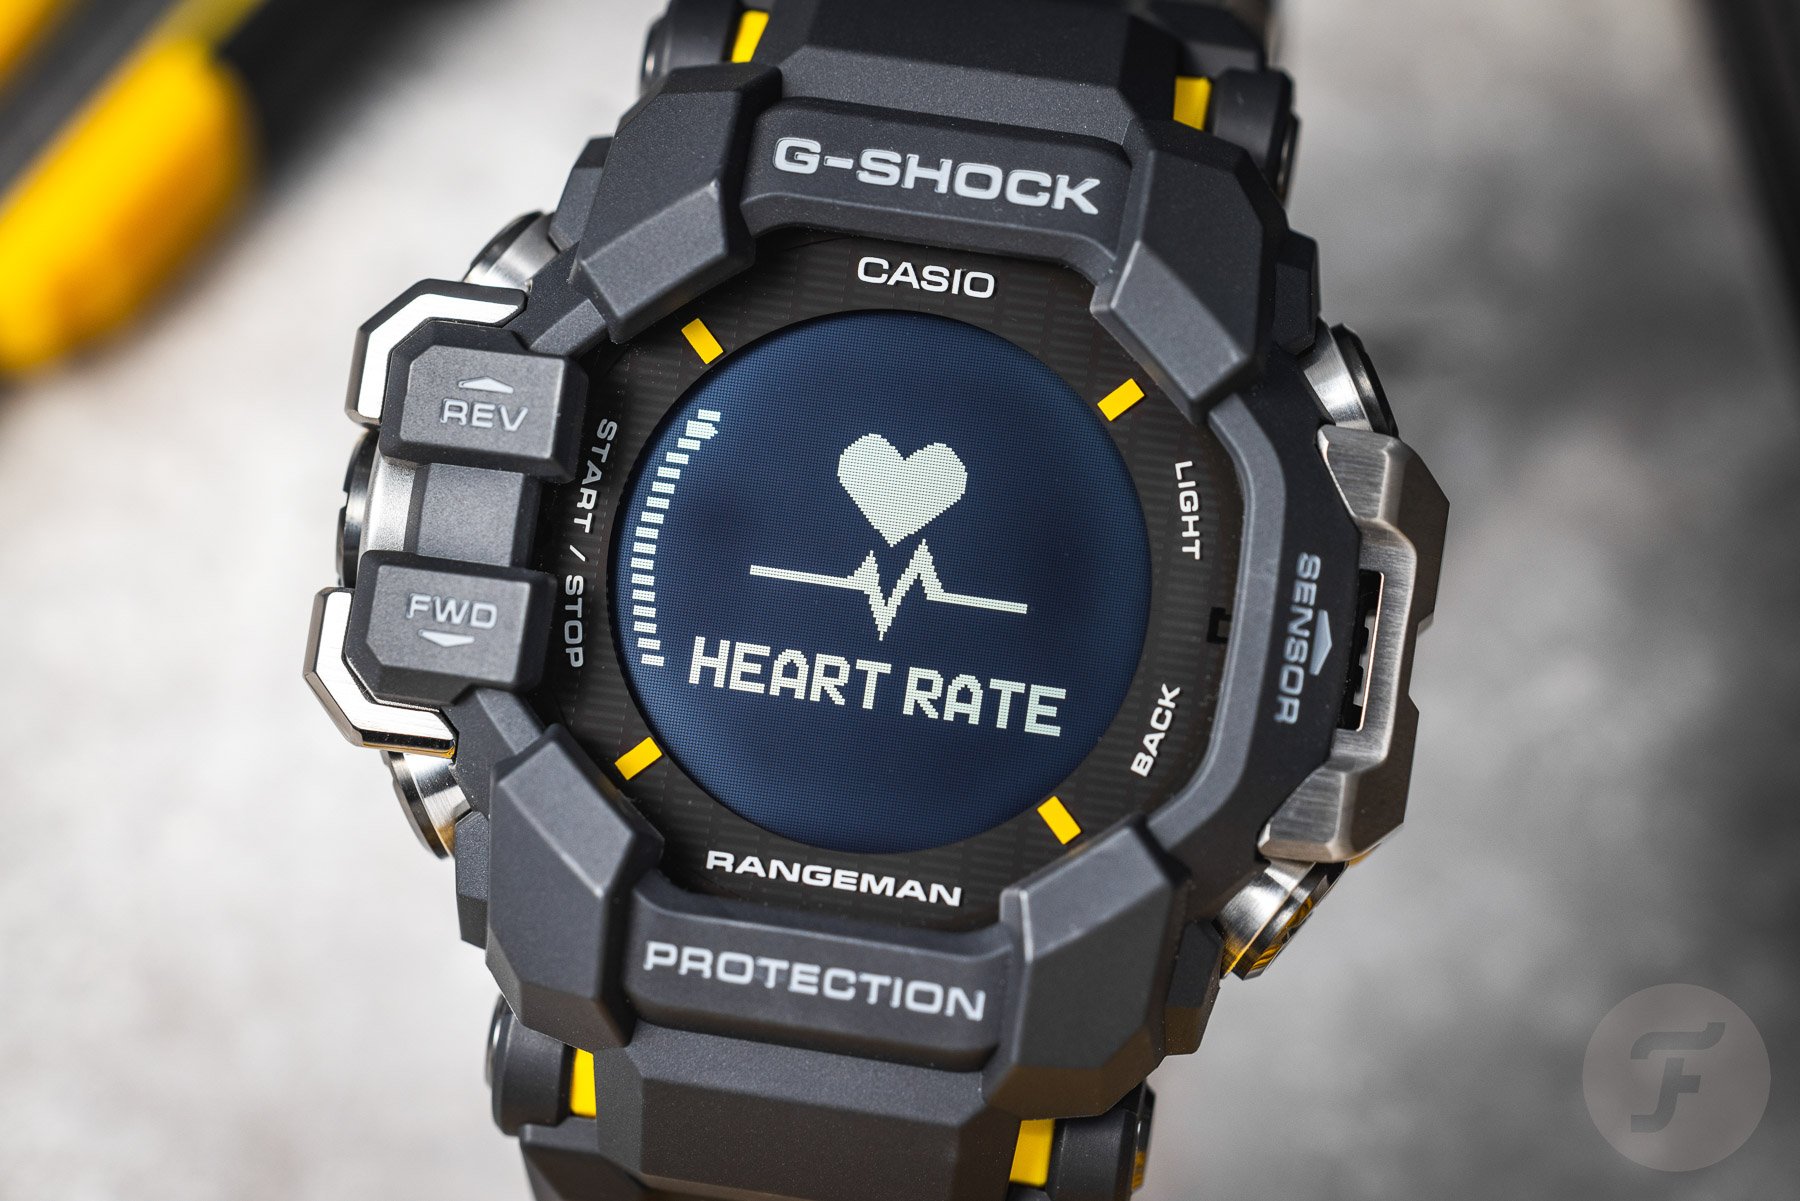 Яркие часы с обновленным дизайном Casio G-Shock Rangeman